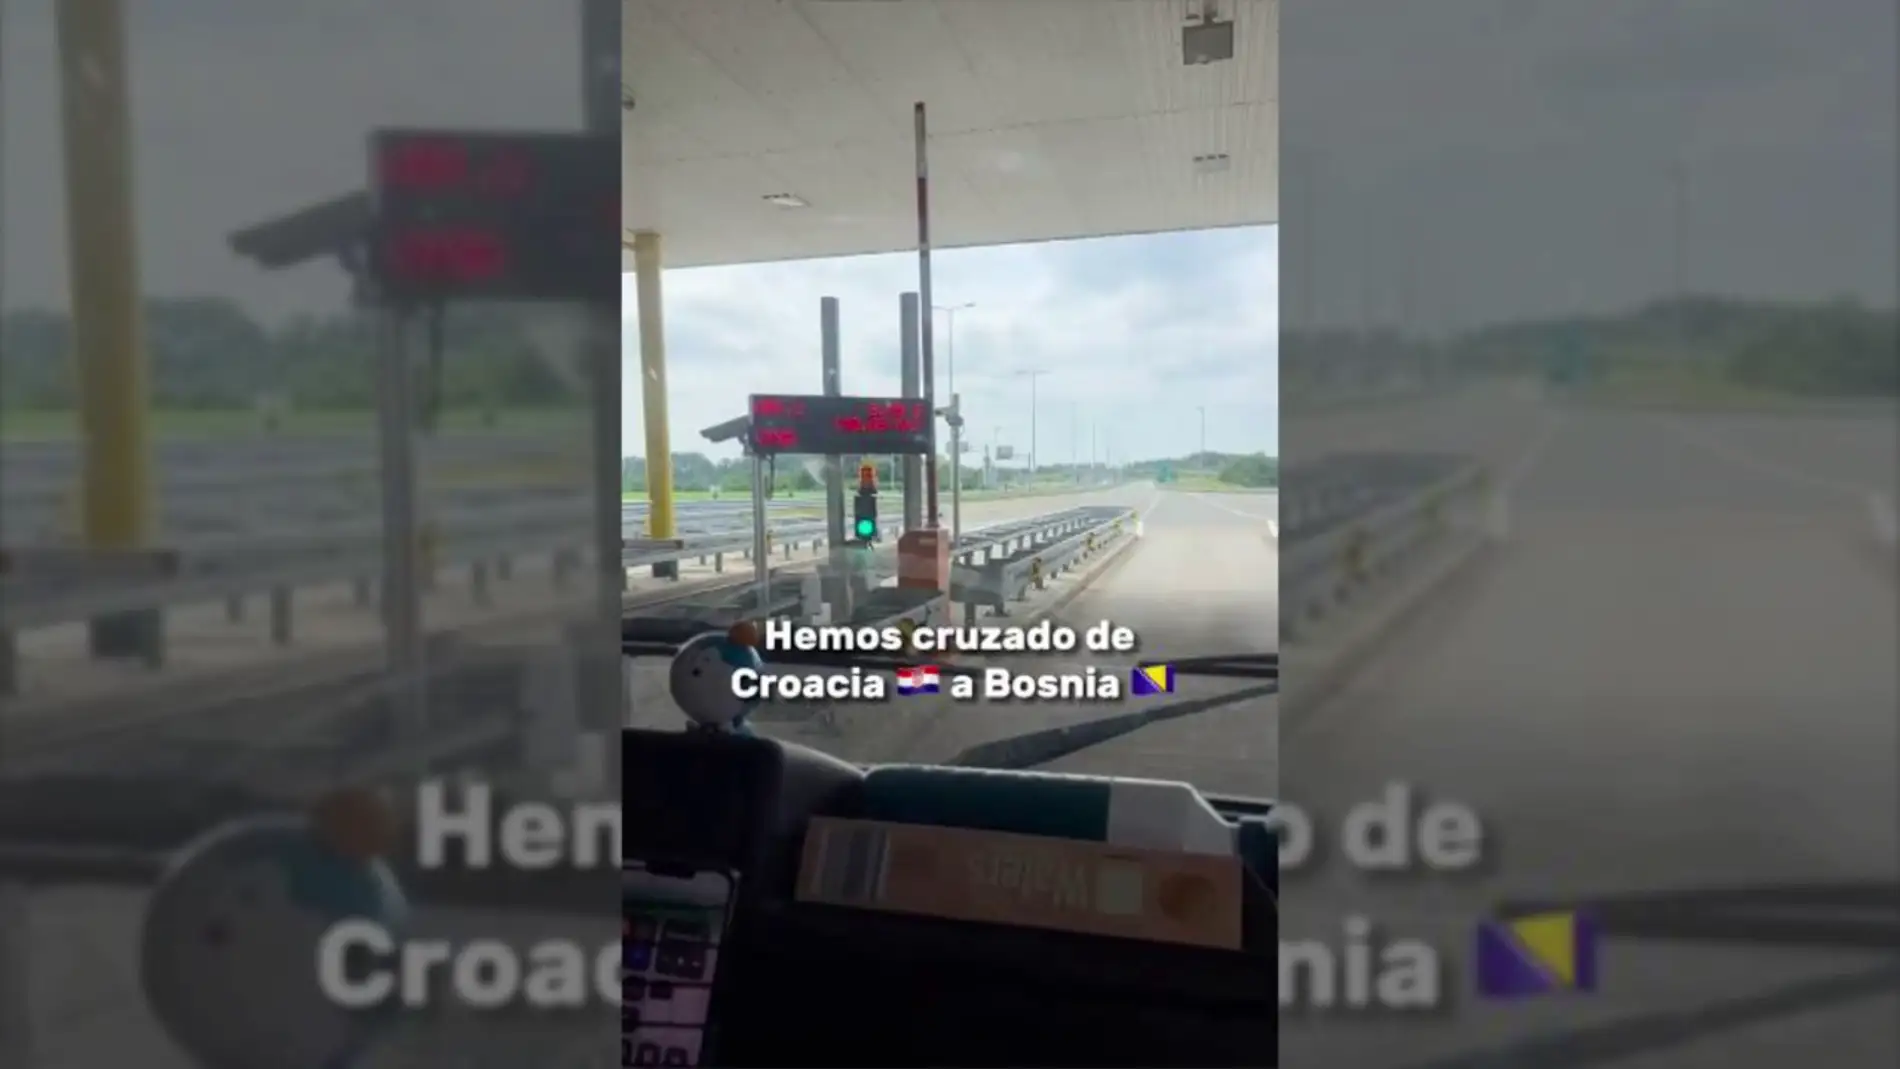 Una mujer española cuenta cómo es el control fronterizo en un país europeo: "Miraron dentro de la autocaravana"